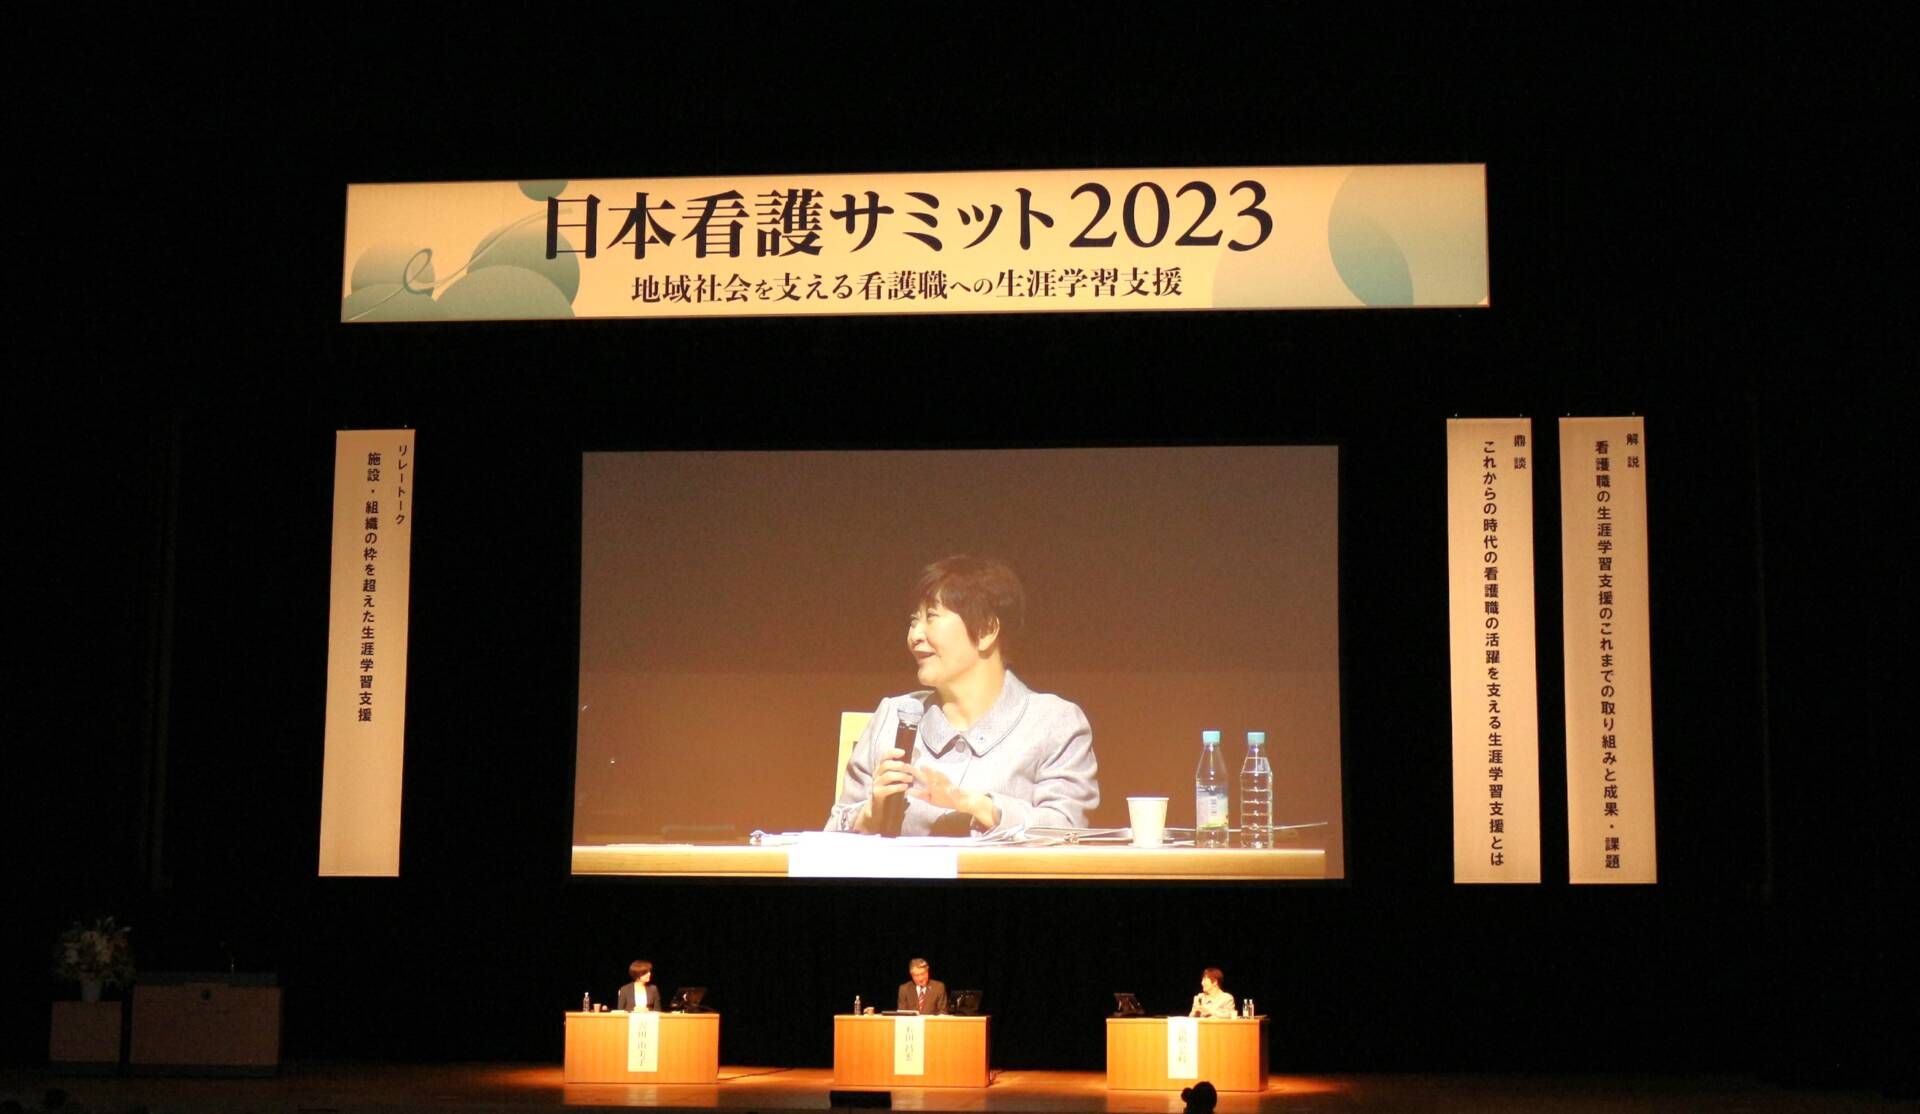 【イベントレポート】看護職の生涯学習支援を考える「日本看護サミット2023」が開催